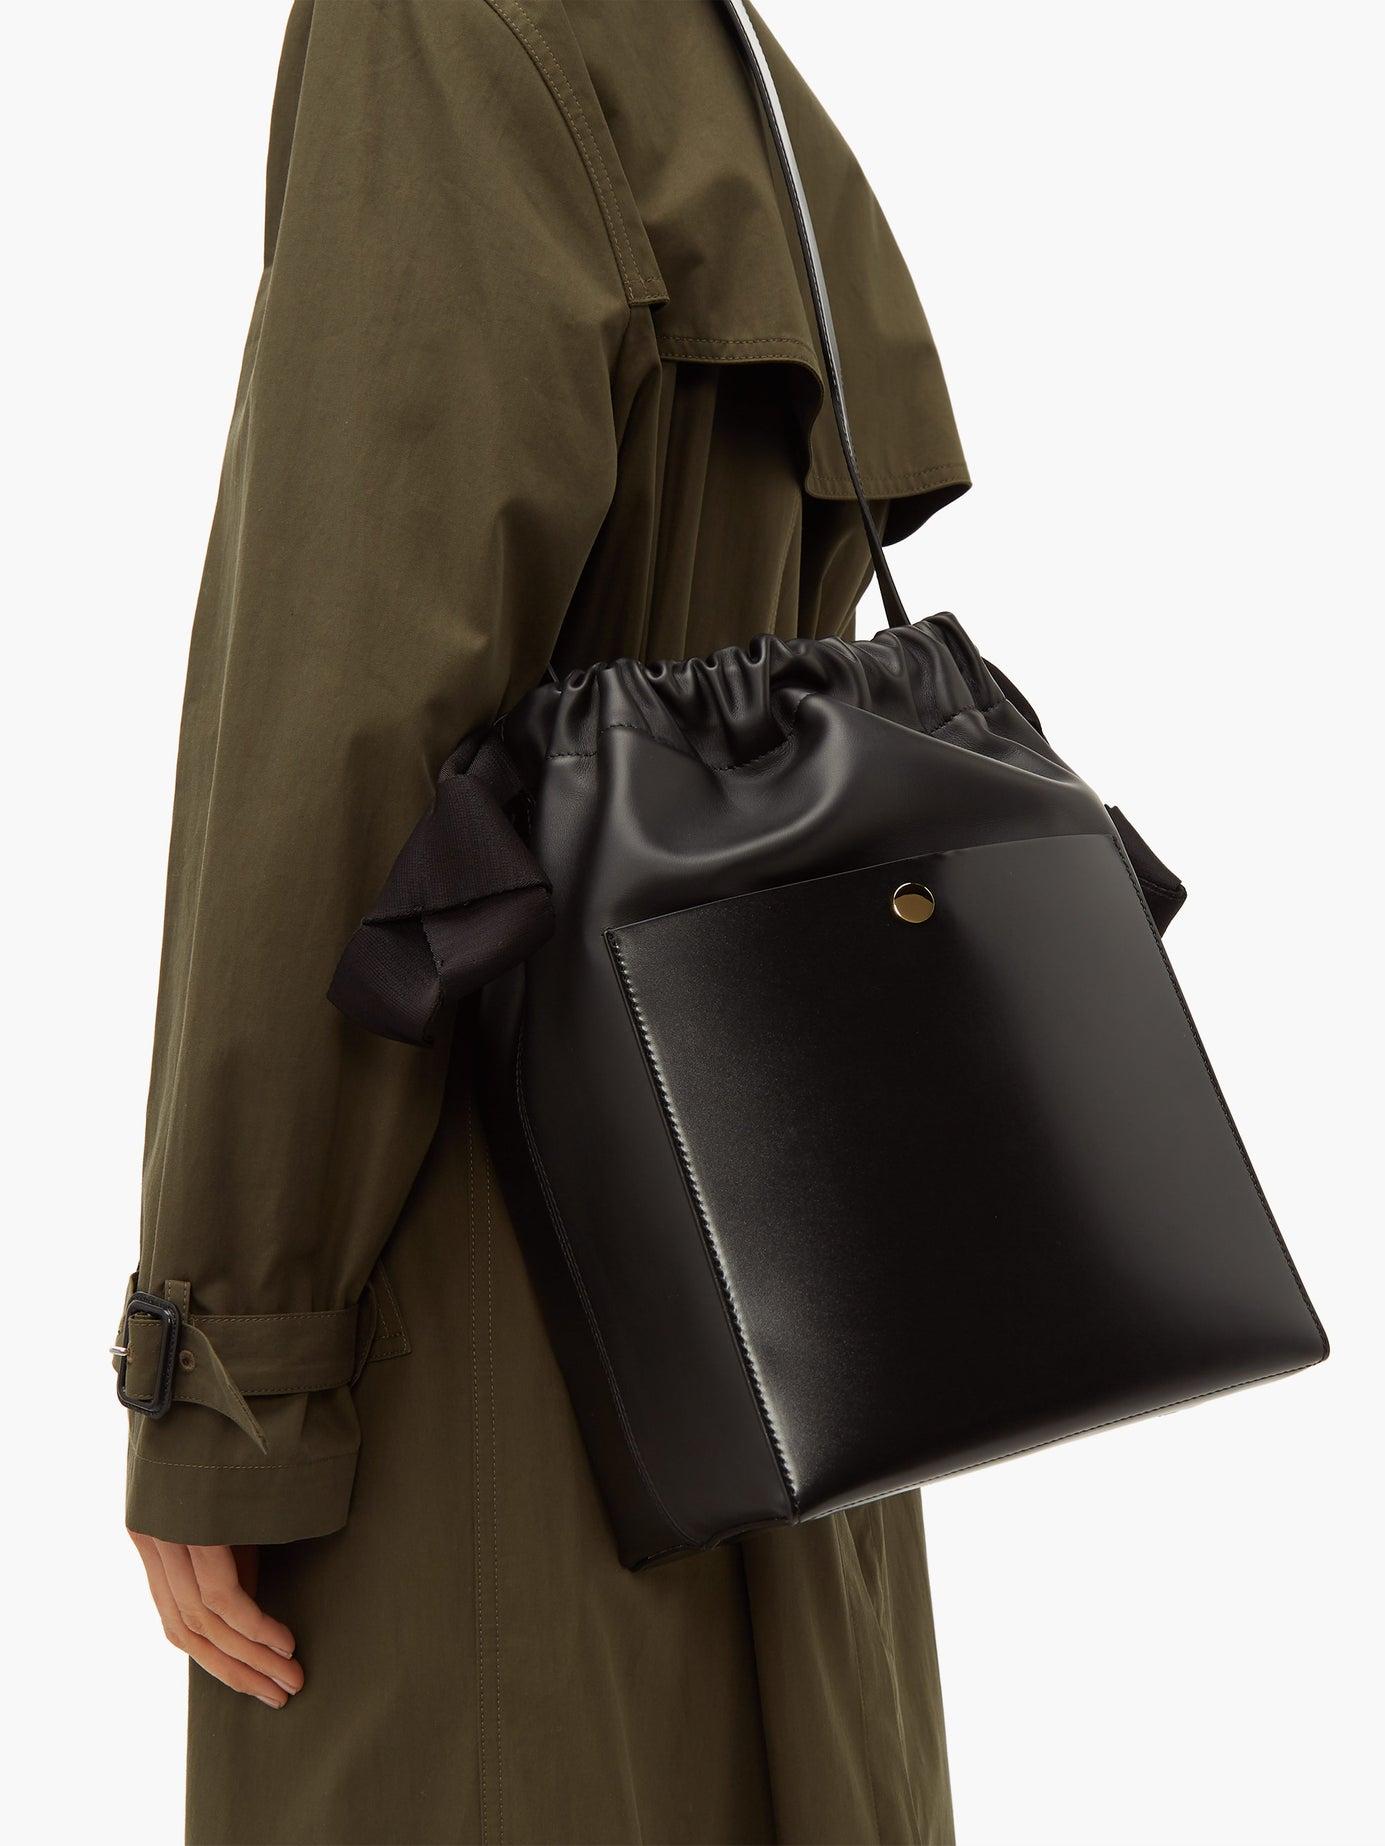 Sophie Hulme Knot Leather Shoulder Bag in Black | Lyst